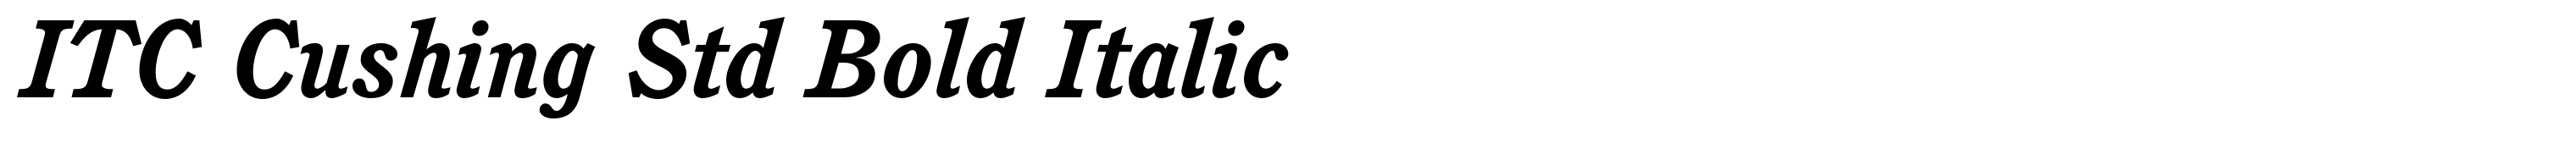 ITC Cushing Std Bold Italic